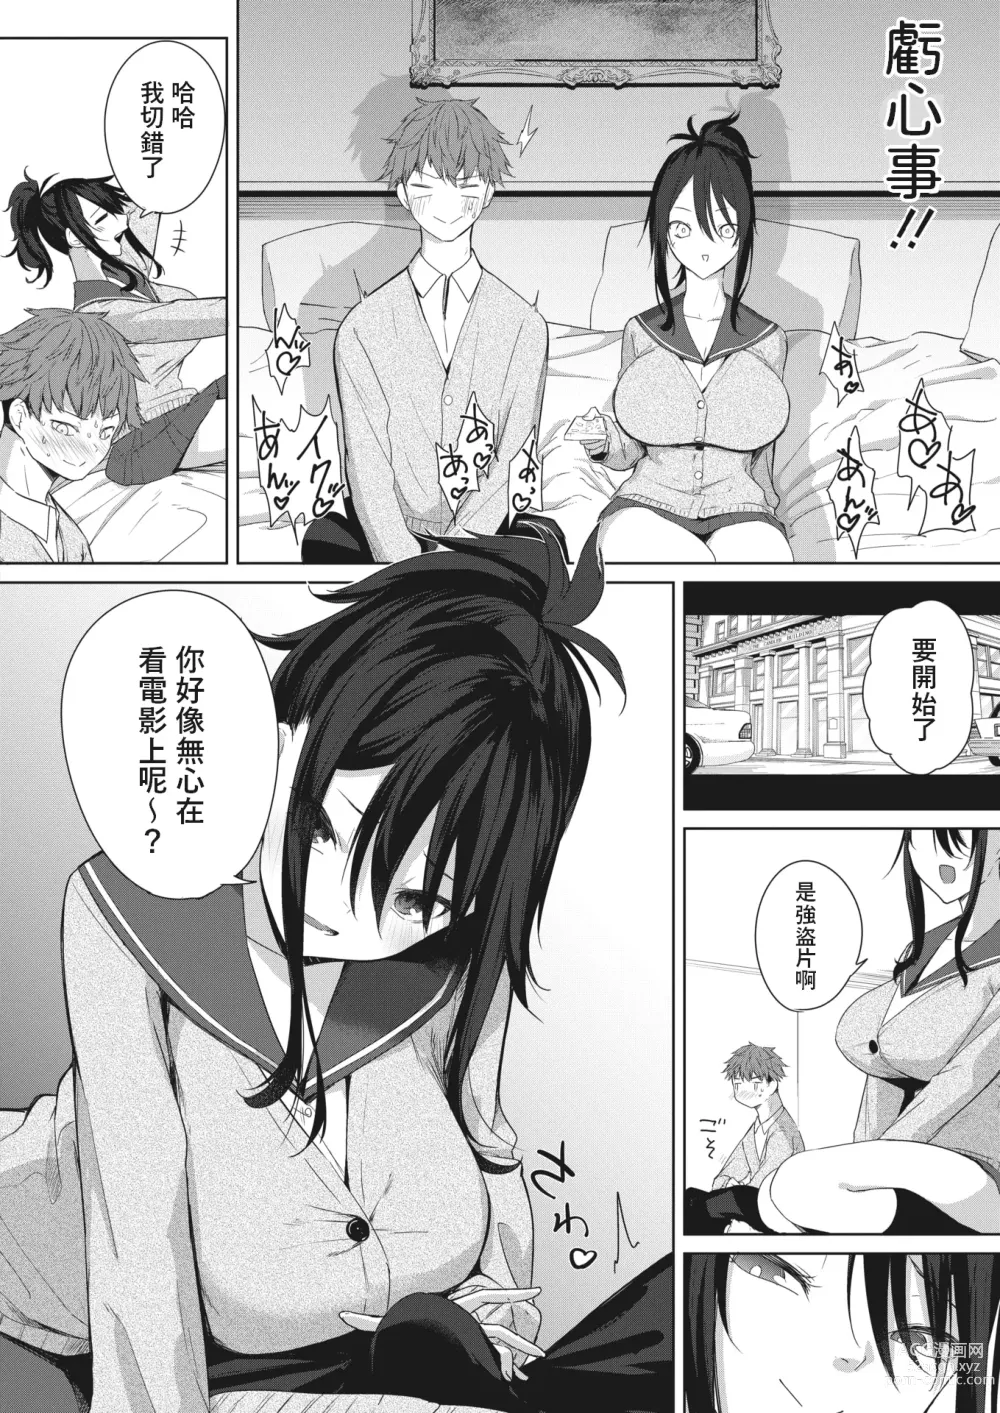 Page 6 of manga Risou no Date